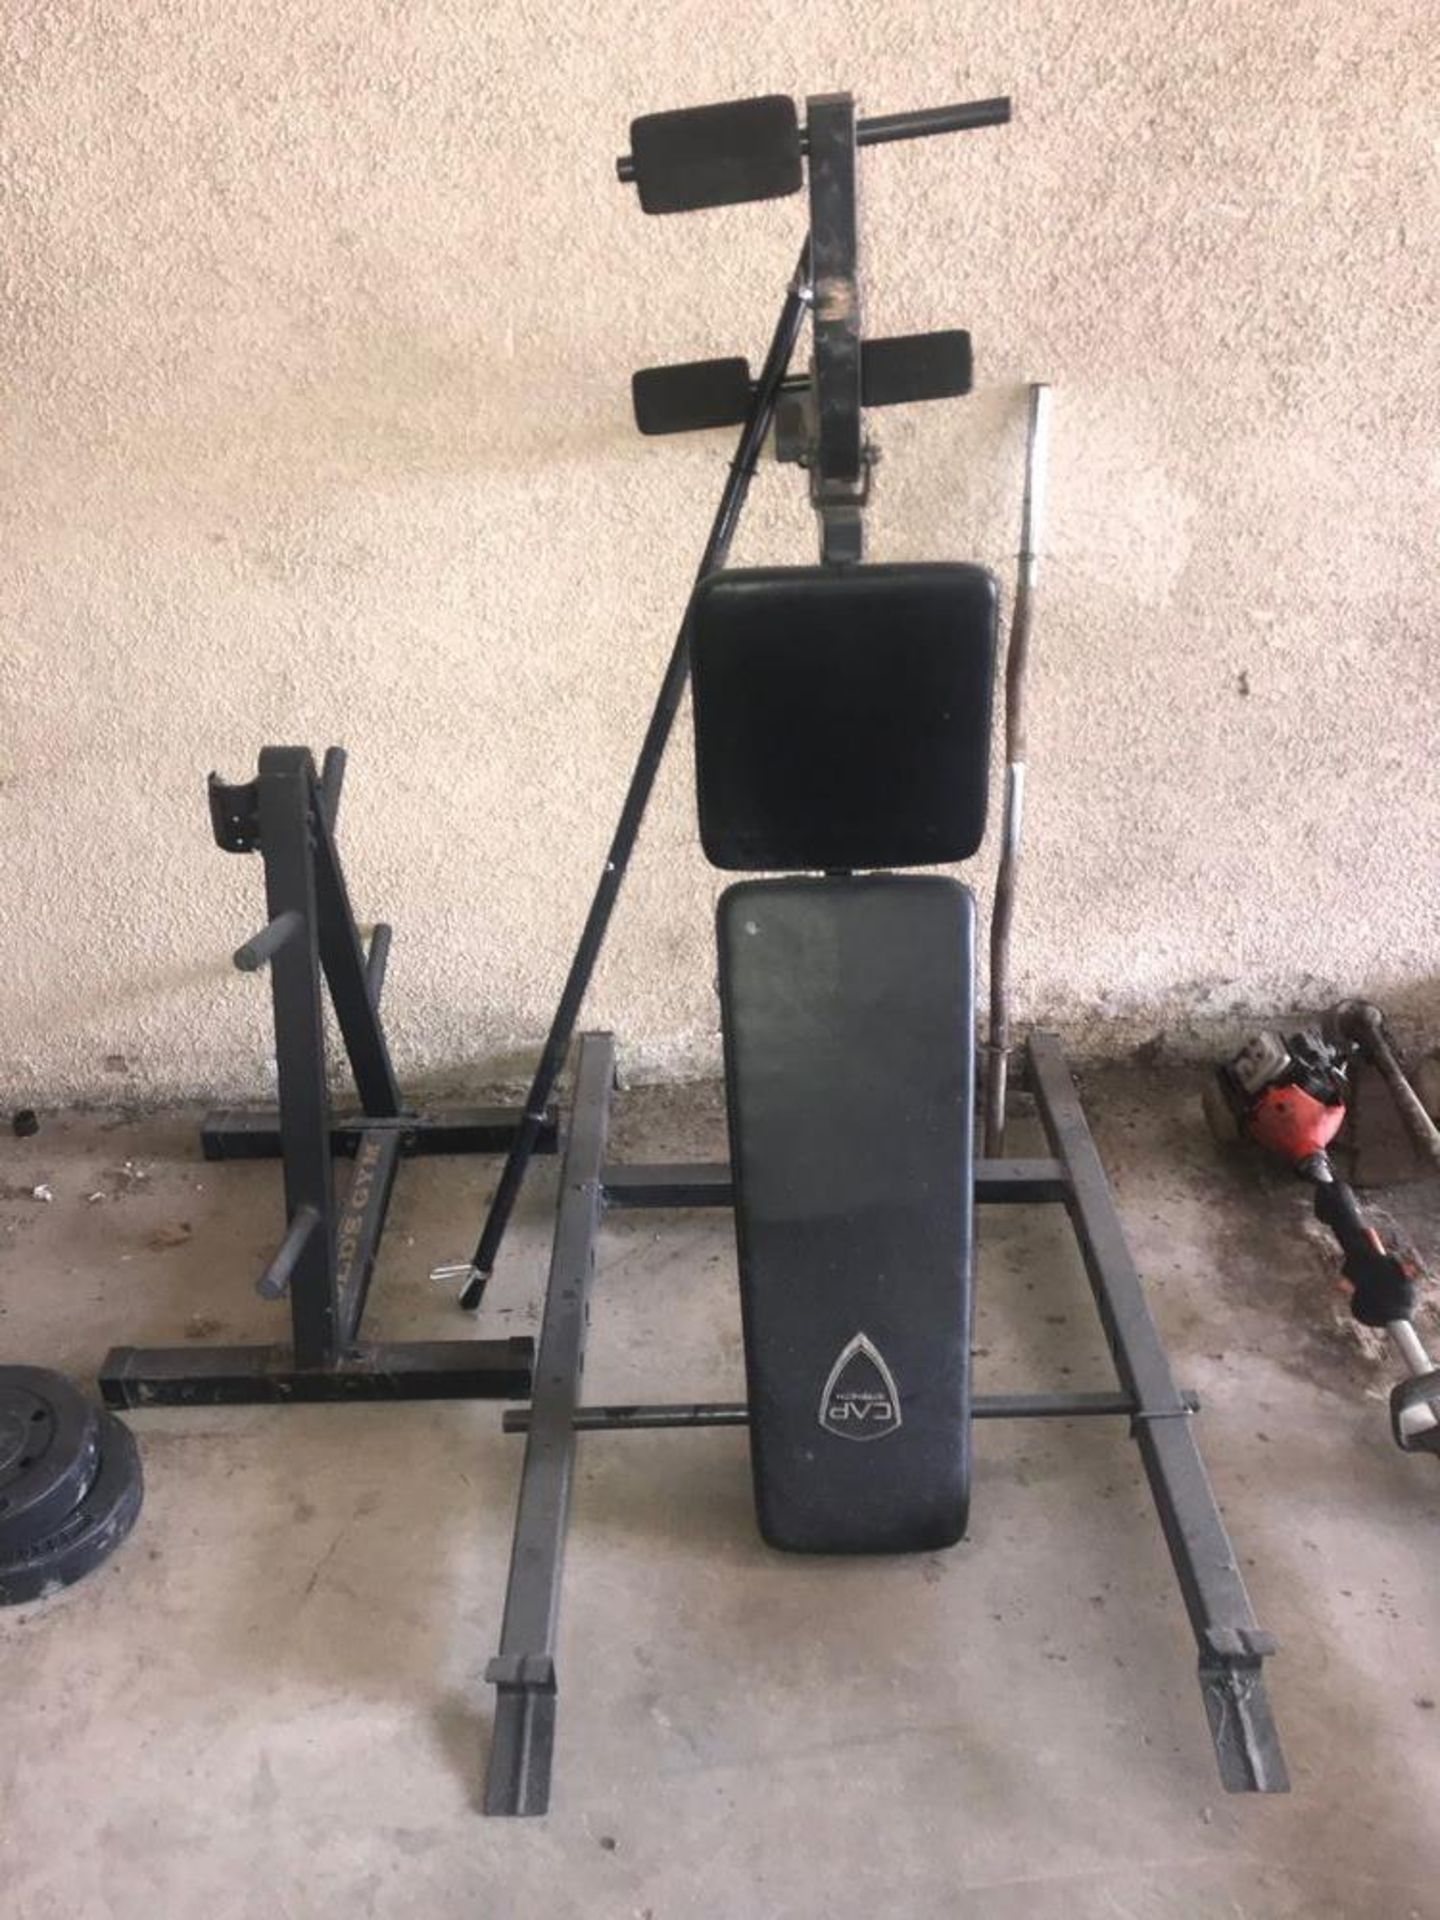 Bowflex PR1000 Workout Machine, Weight Bench, Weight Rack, (6) Misc Weights - Image 2 of 2